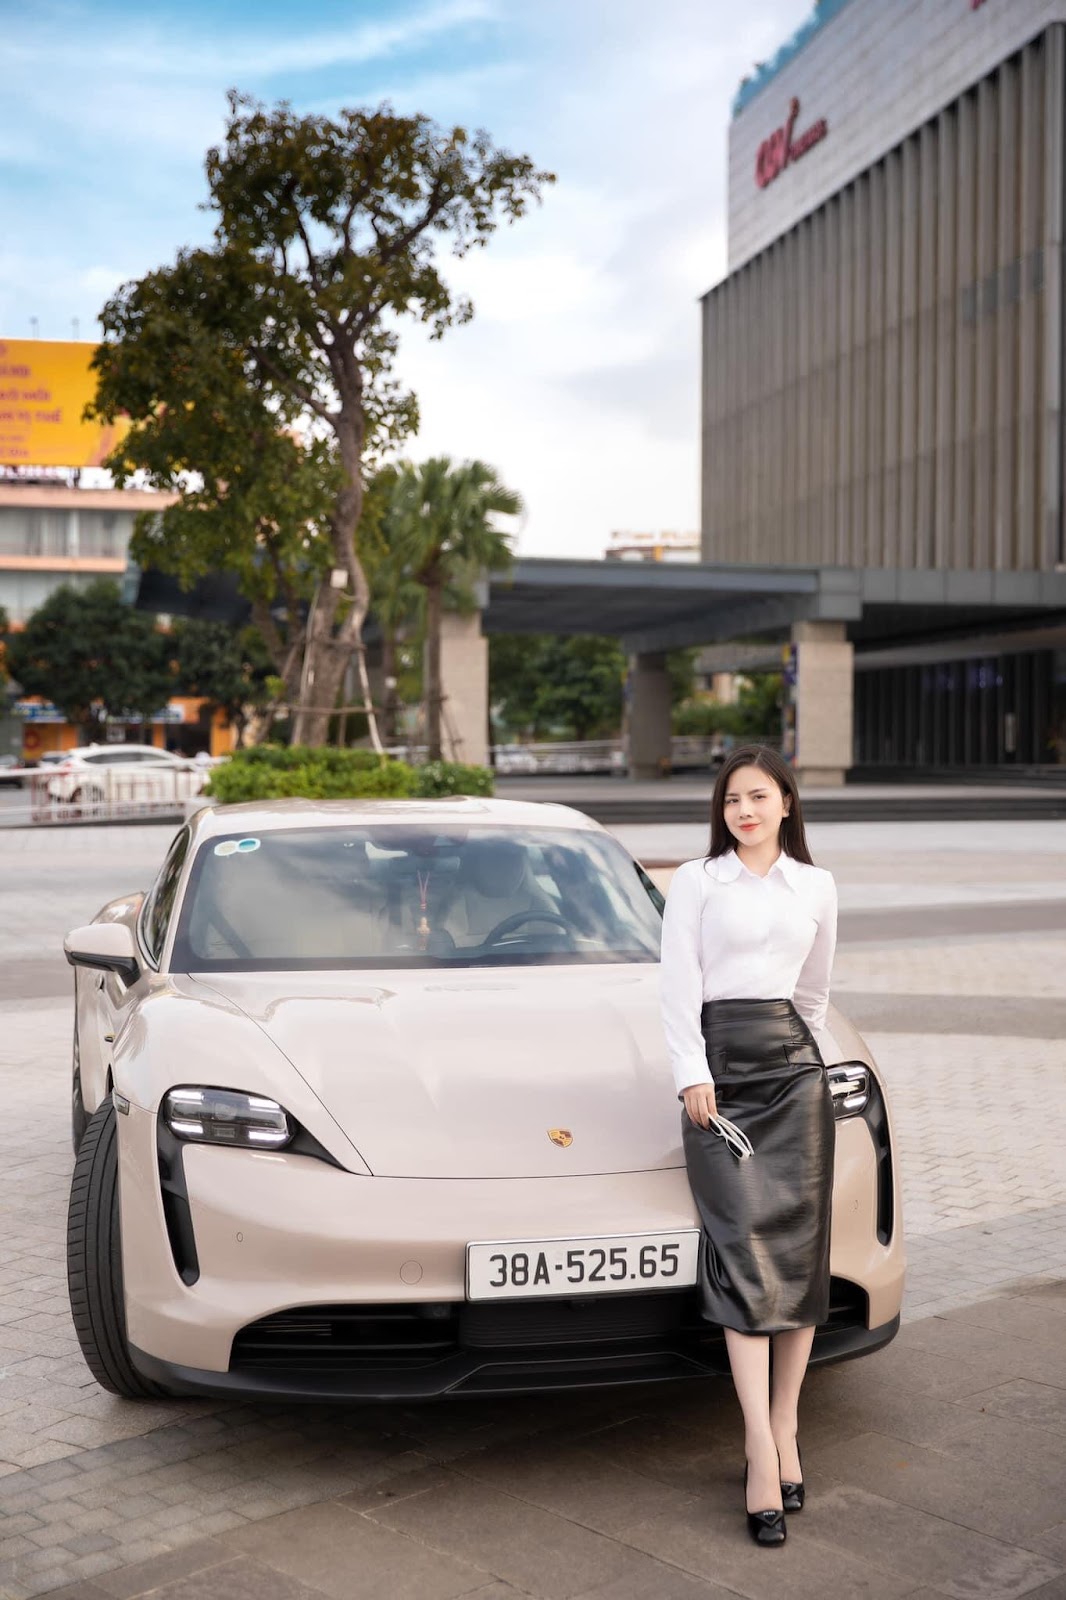 View - Danh tính nữ CEO 9x ở Hà Tĩnh sở hữu siêu xe Porsche thuần điện đầu tiên tại miền Trung